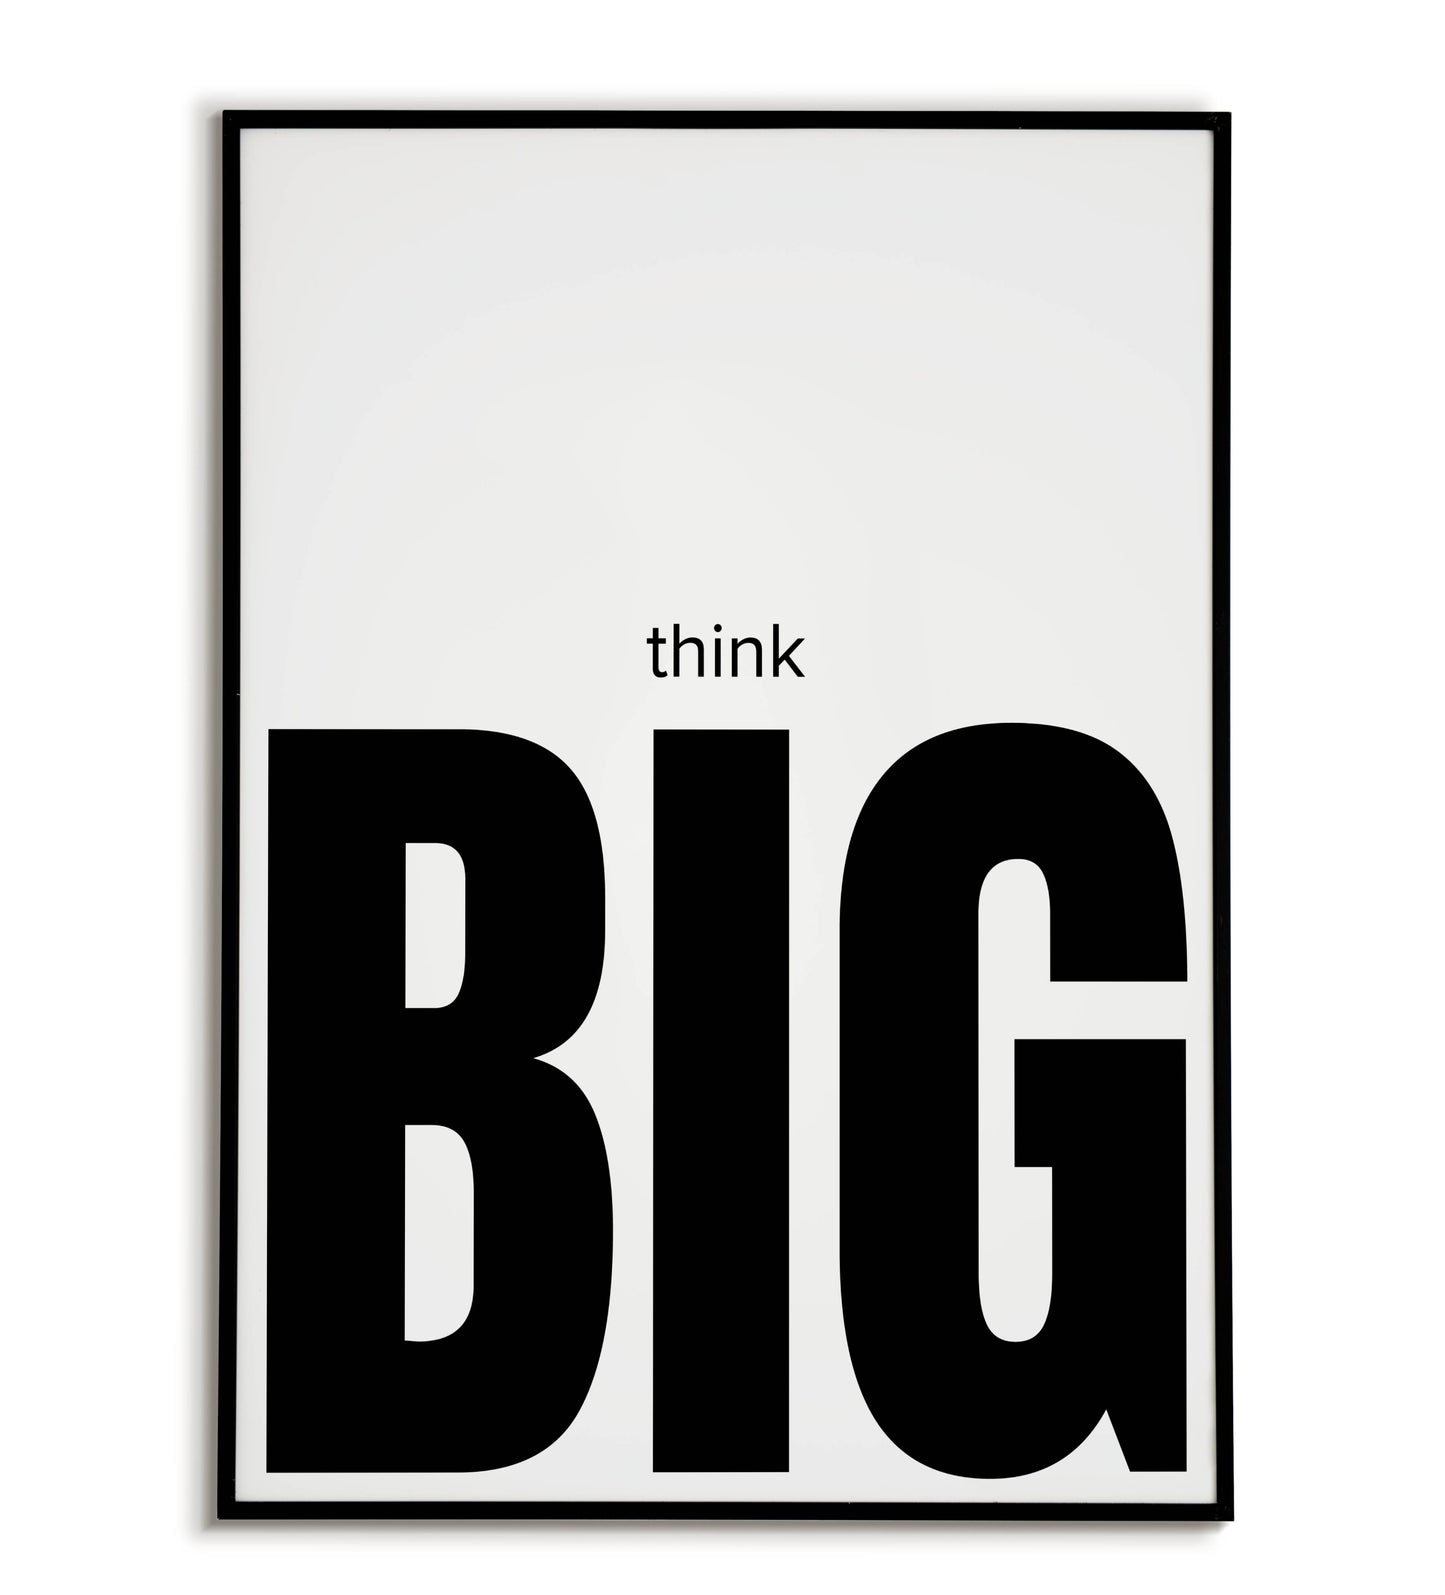 "Think big" printable inspirational poster.